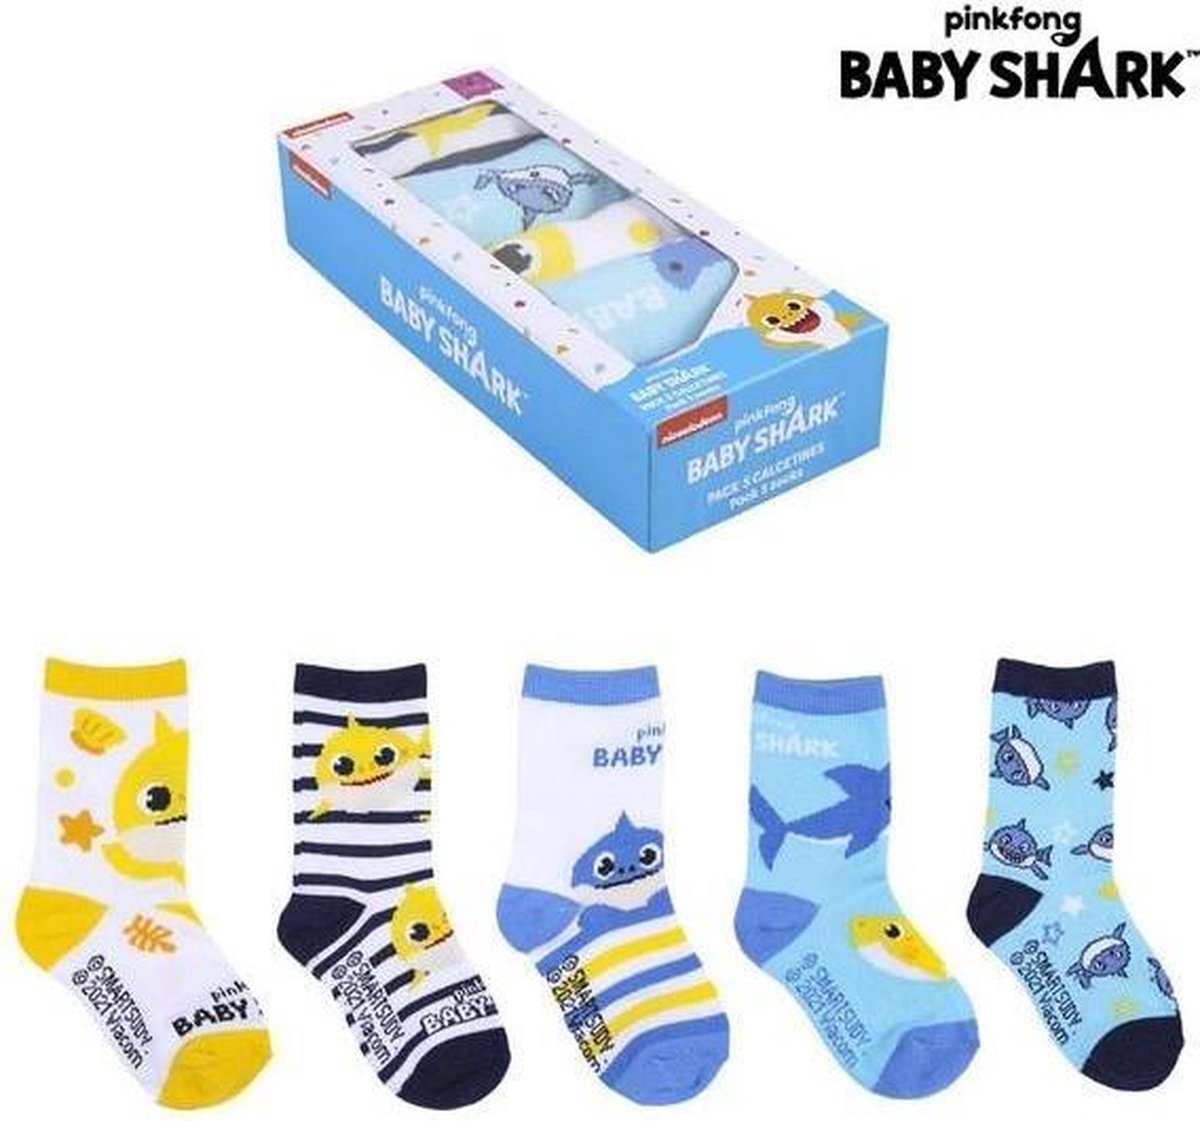 Sokken 5 pack - BABY SHARK - Nickelodeon - Pinkfong - maat 19/20 - sokken set van 5 stuks